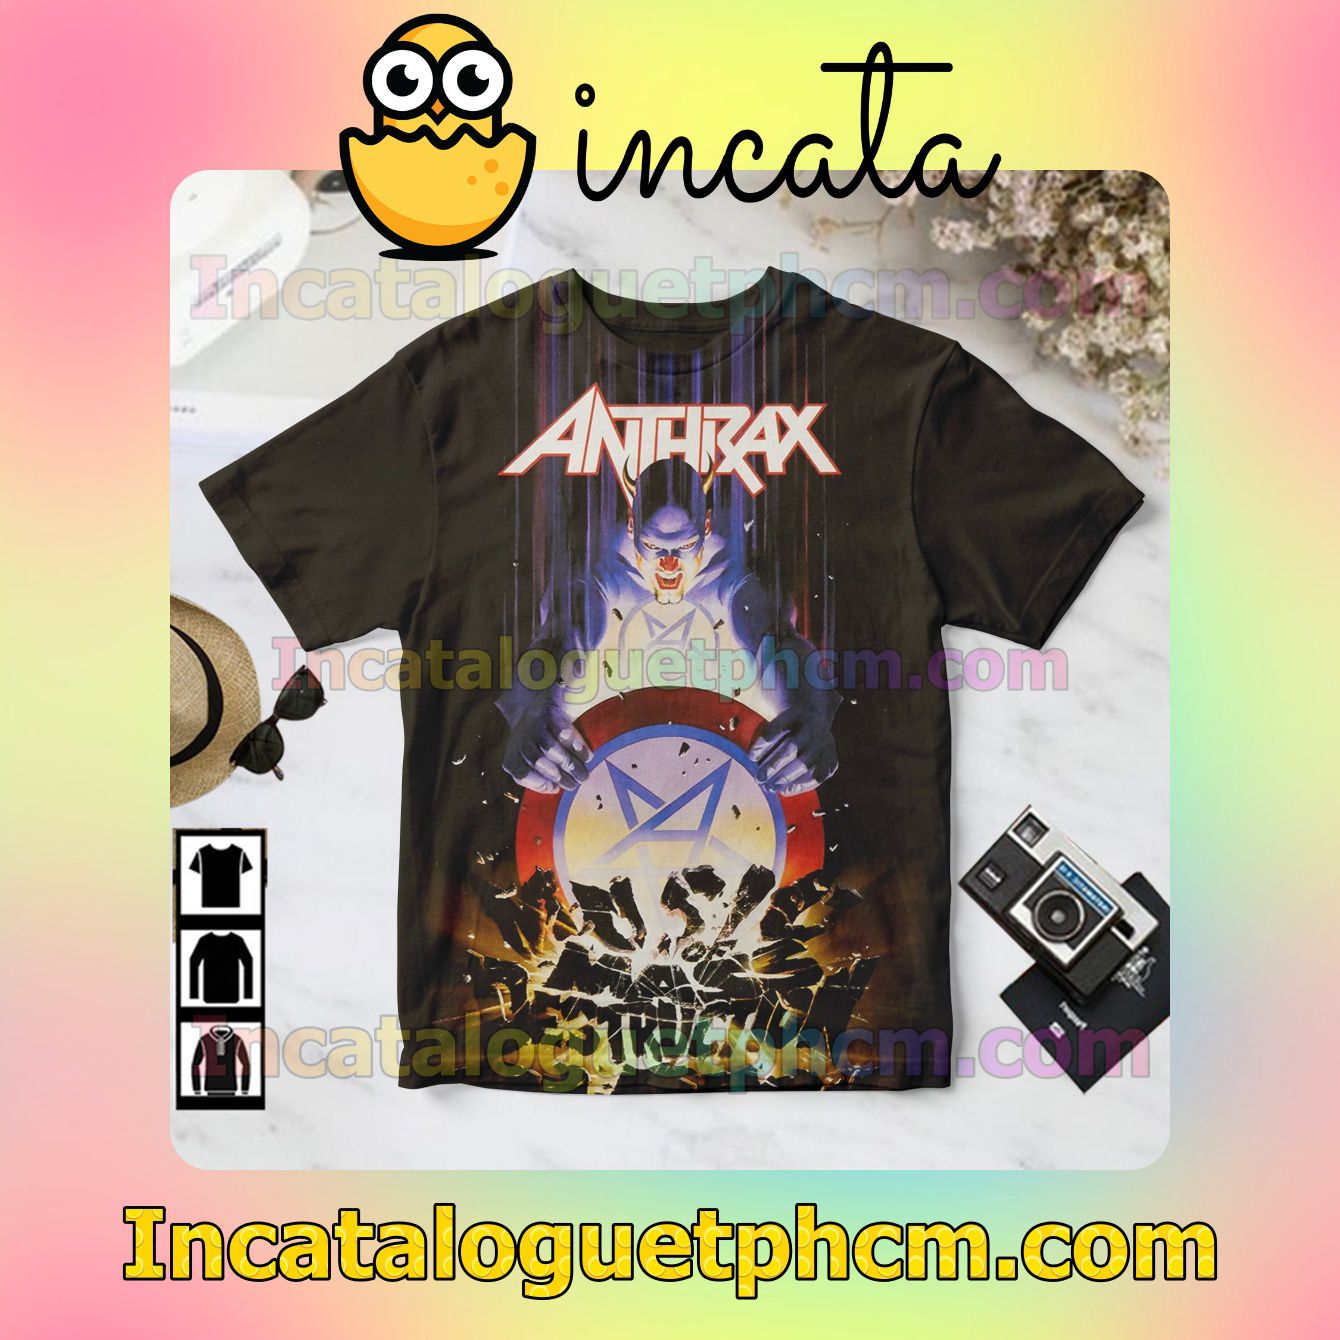 Anthrax Music Of Mass Destruction Album Cover Gift Shirt